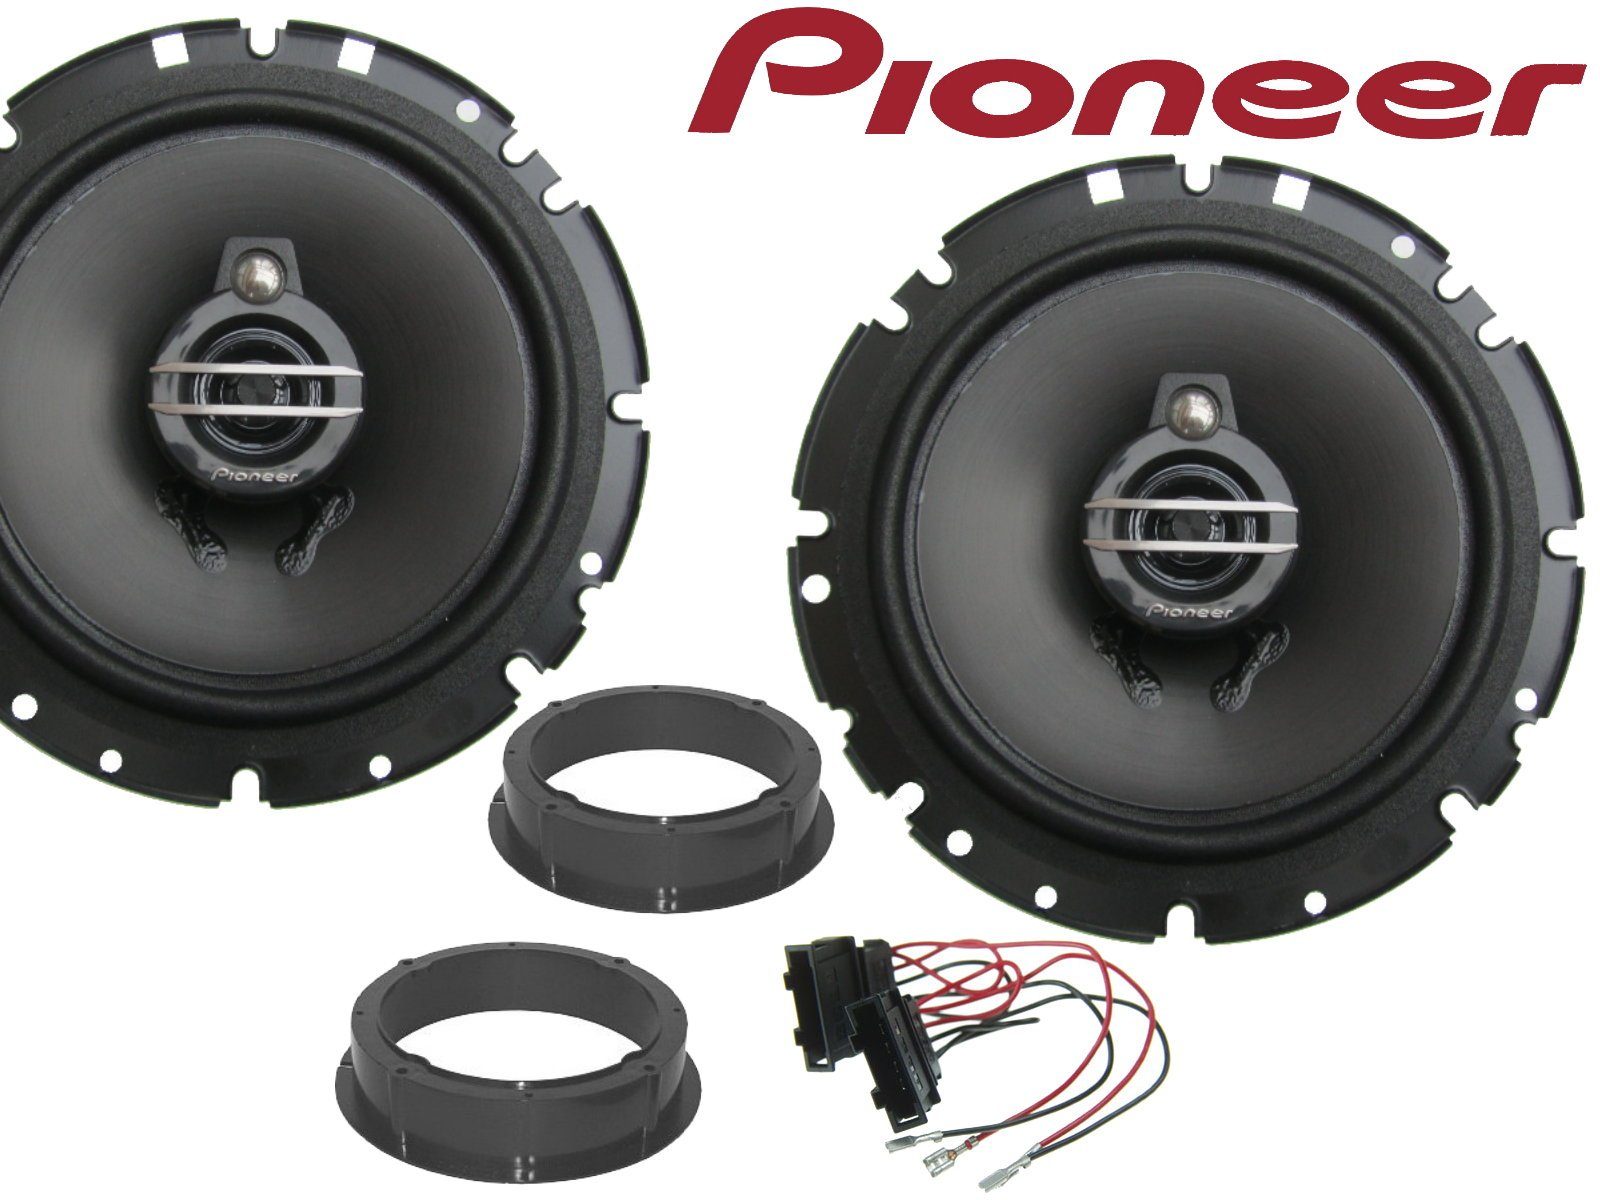 DSX Pioneer 3wege passend für Skoda Rapid 12 - 19 Laut Auto-Lautsprecher (40 W)